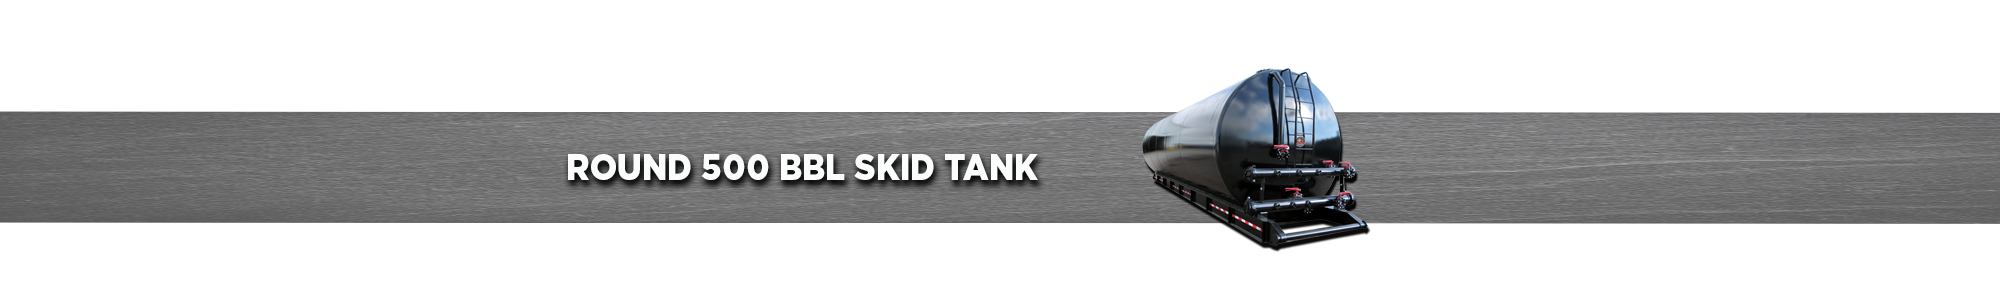 Round 500BBL Skid Tank